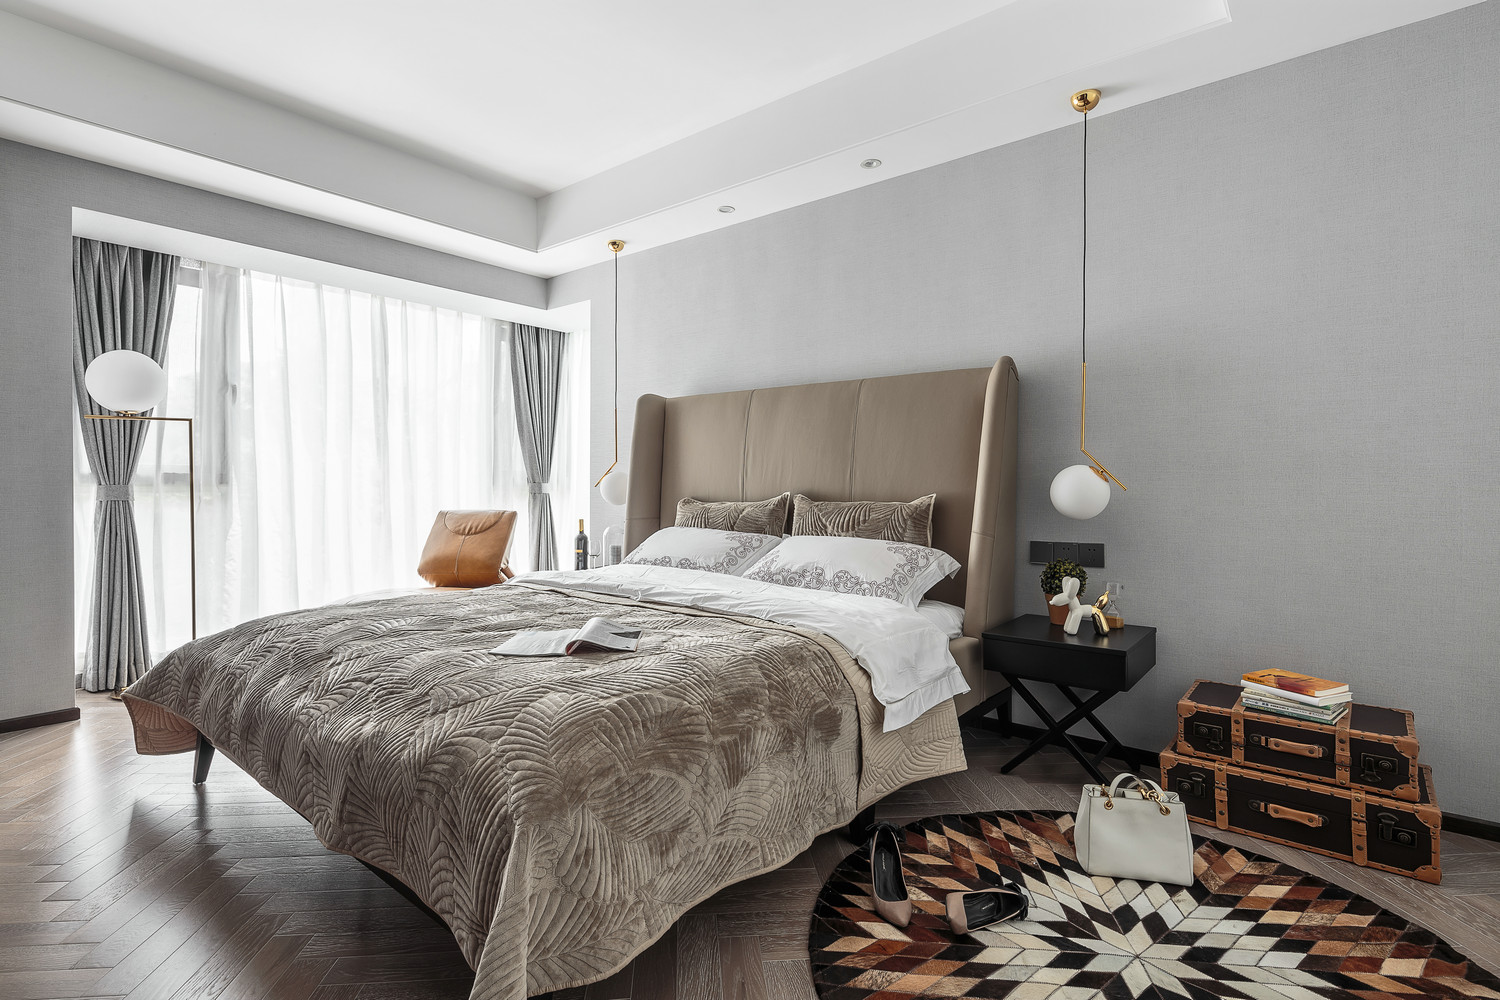 主卧米色床头搭配精致床铺，让空间显得十分静谧，床头垂吊灯光营造了安静温暖的氛围特点。